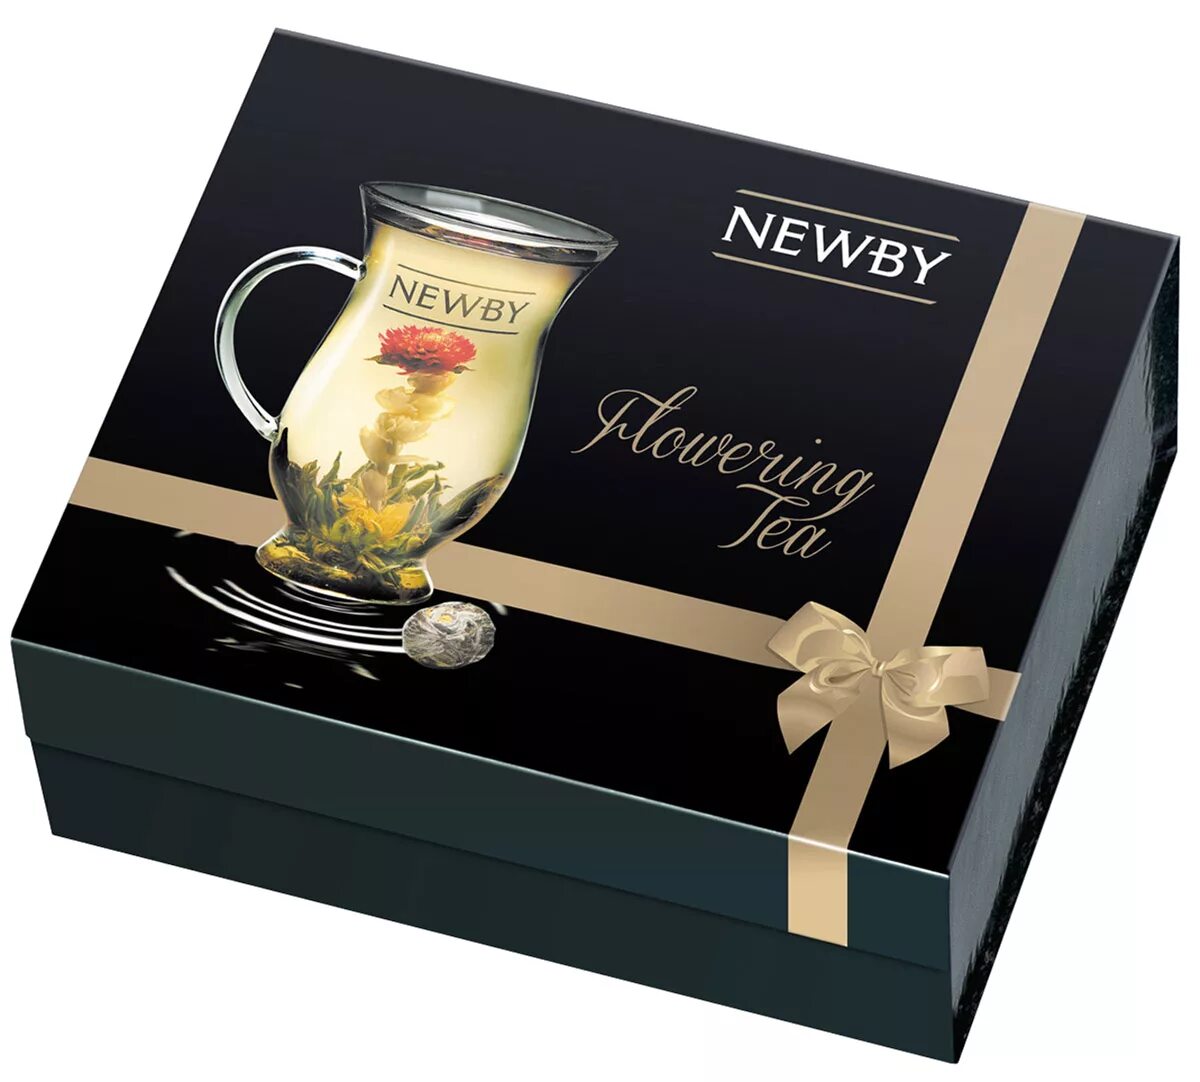 Чай Newby подарочный набор. Чай Newby набор чайный. Чай черный Newby Black Teas ассорти подарочный набор. Чай черный Newby Crown ассорти подарочный набор. Купить качественный чай